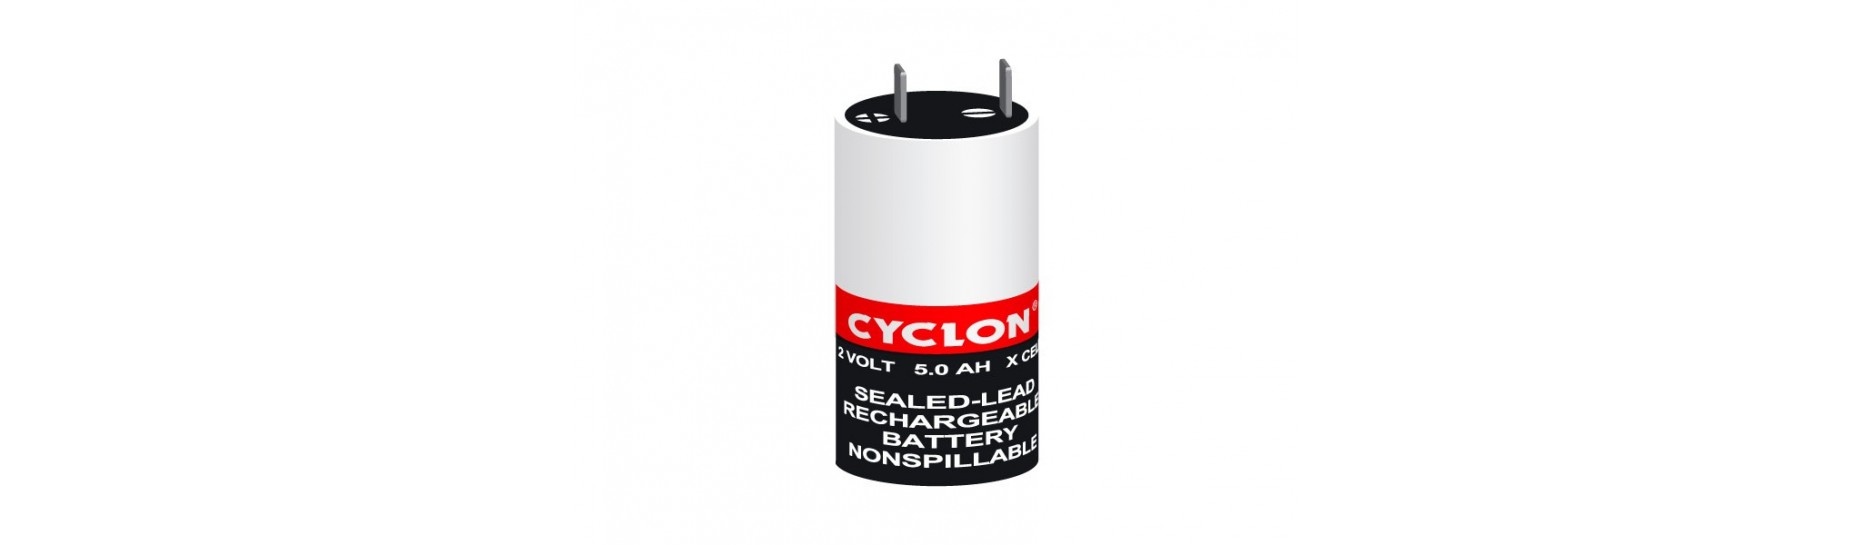 Baterías de plomo CYCLON | Comprar Batería de plomo CYCLON